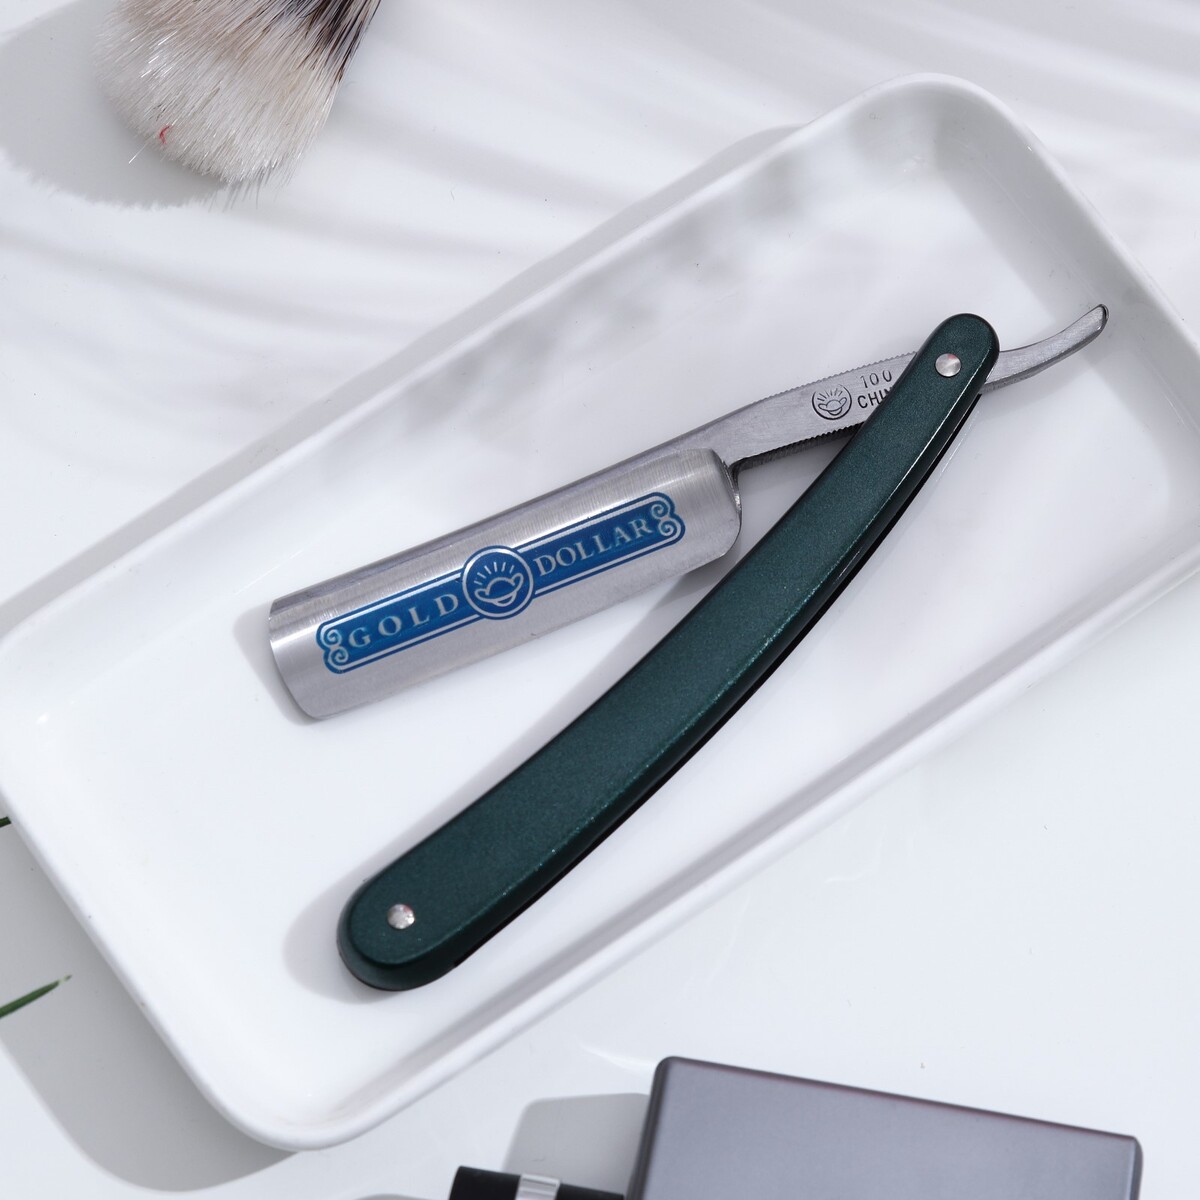 Опасная бритва для традиционного бритья опасная бритва шаветт без лезвия 13 3 × 21 × 2 8 см стальная серебристый